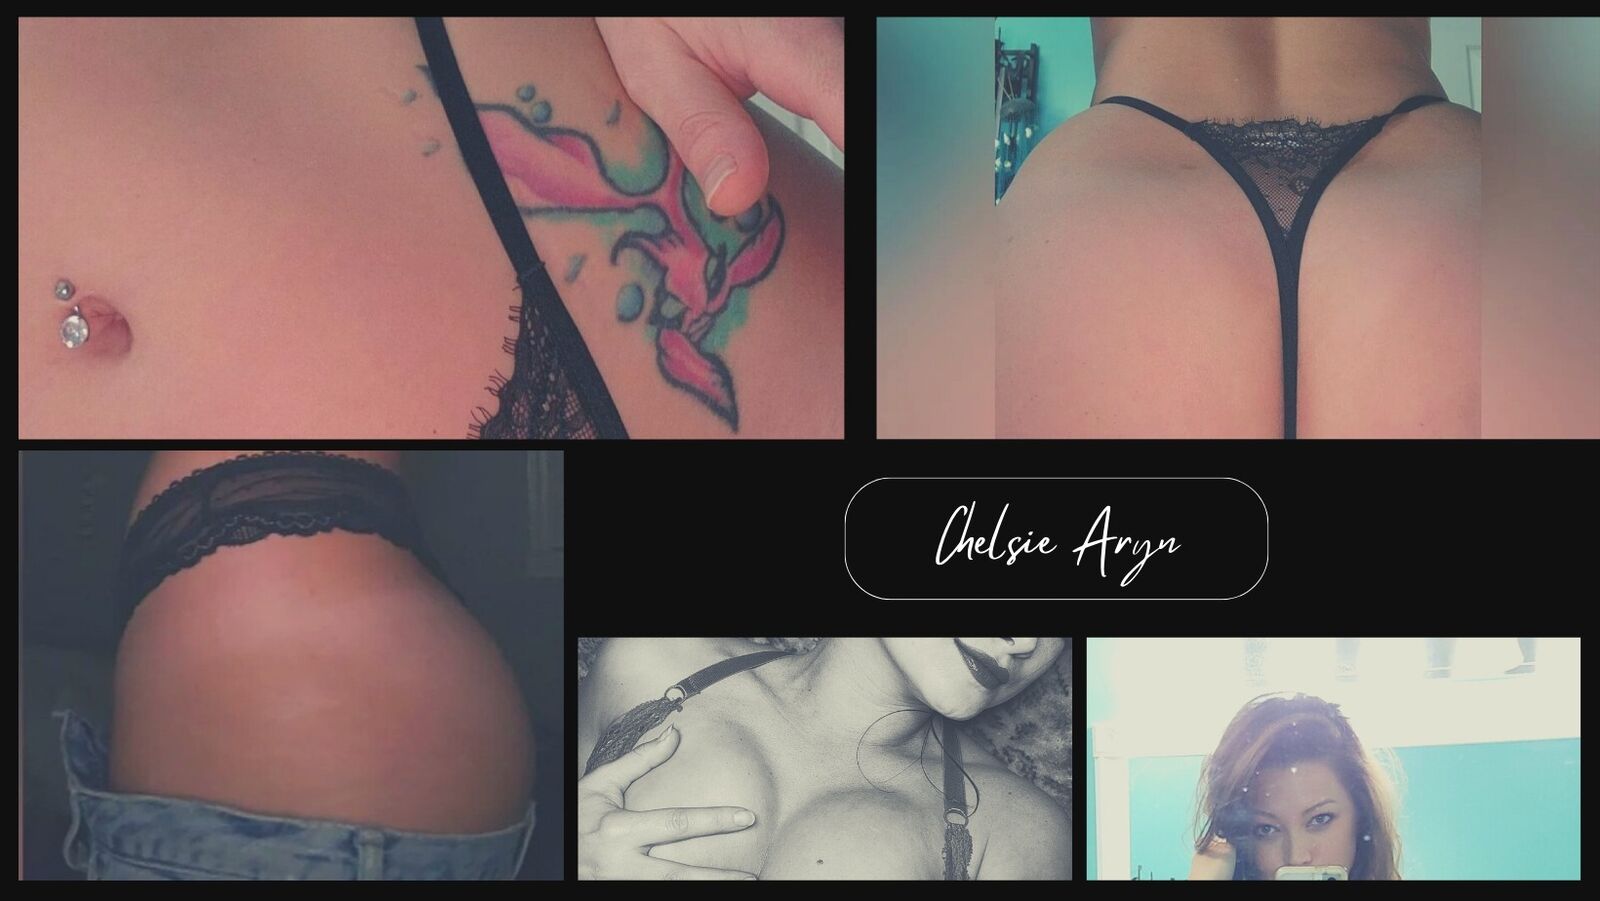 See Chelsie Aryn profile